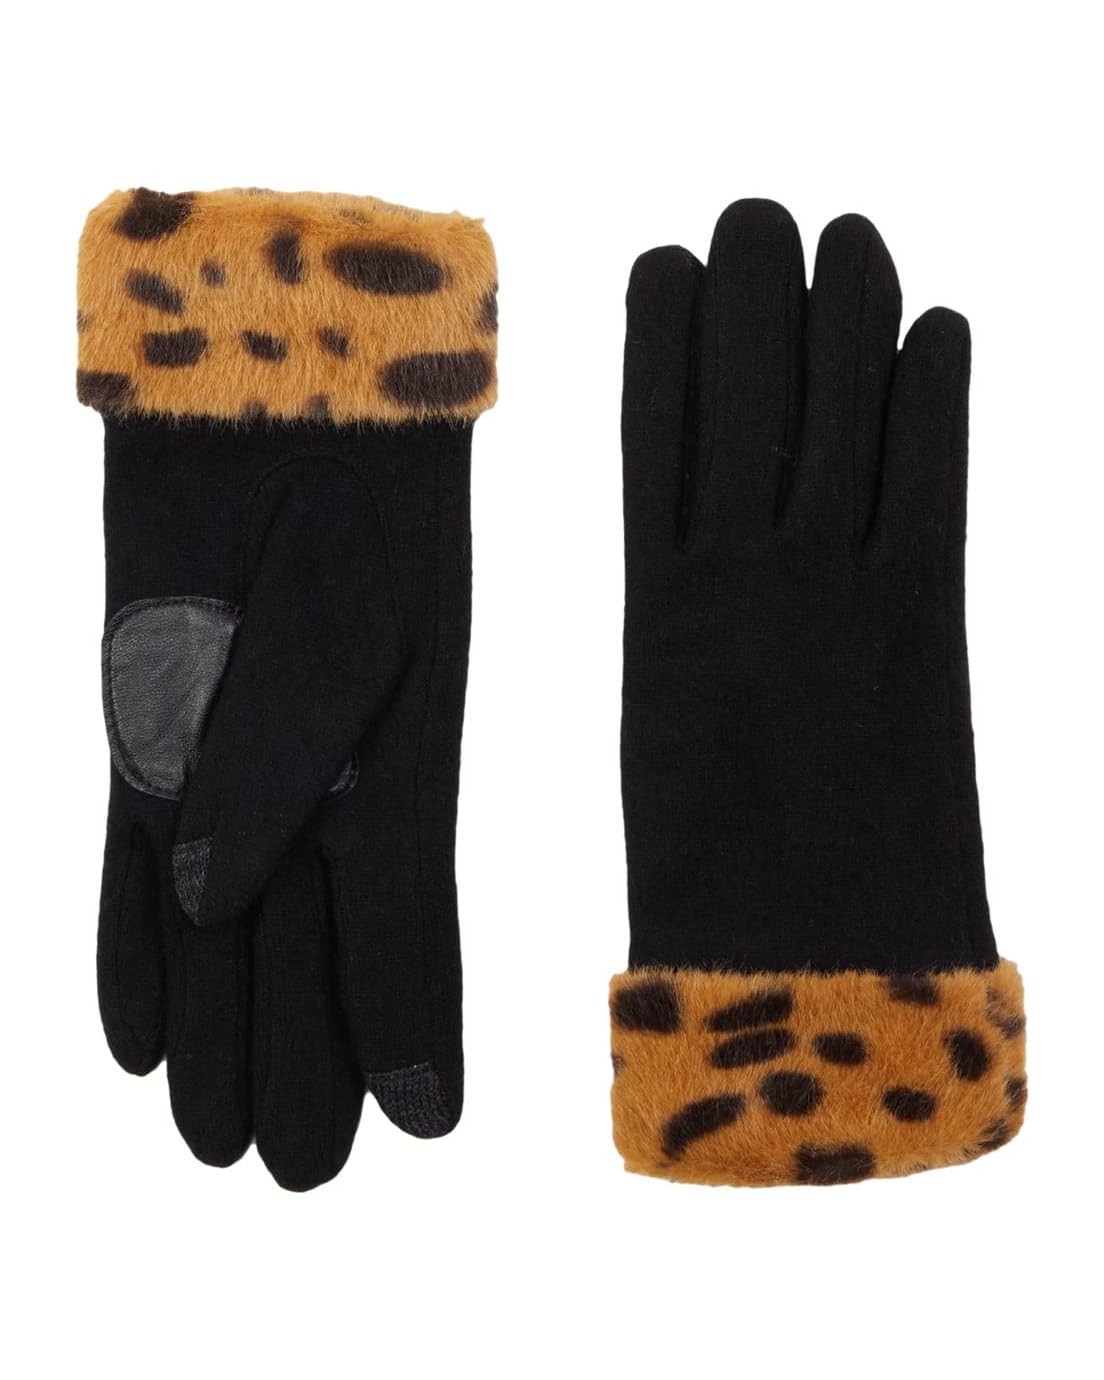  Echo New York Printed Faux Fur Cuff Gloves